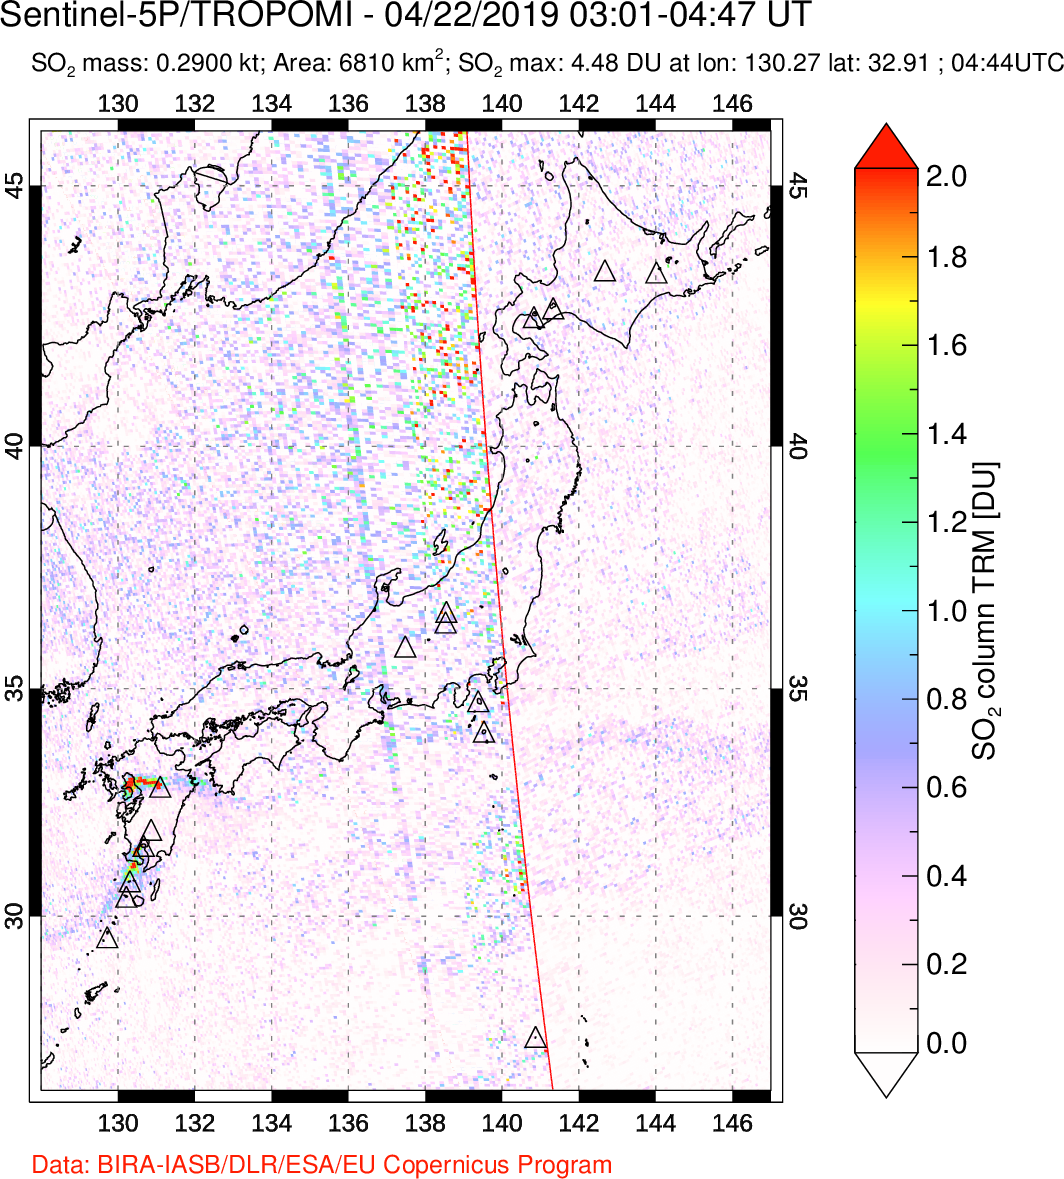 A sulfur dioxide image over Japan on Apr 22, 2019.